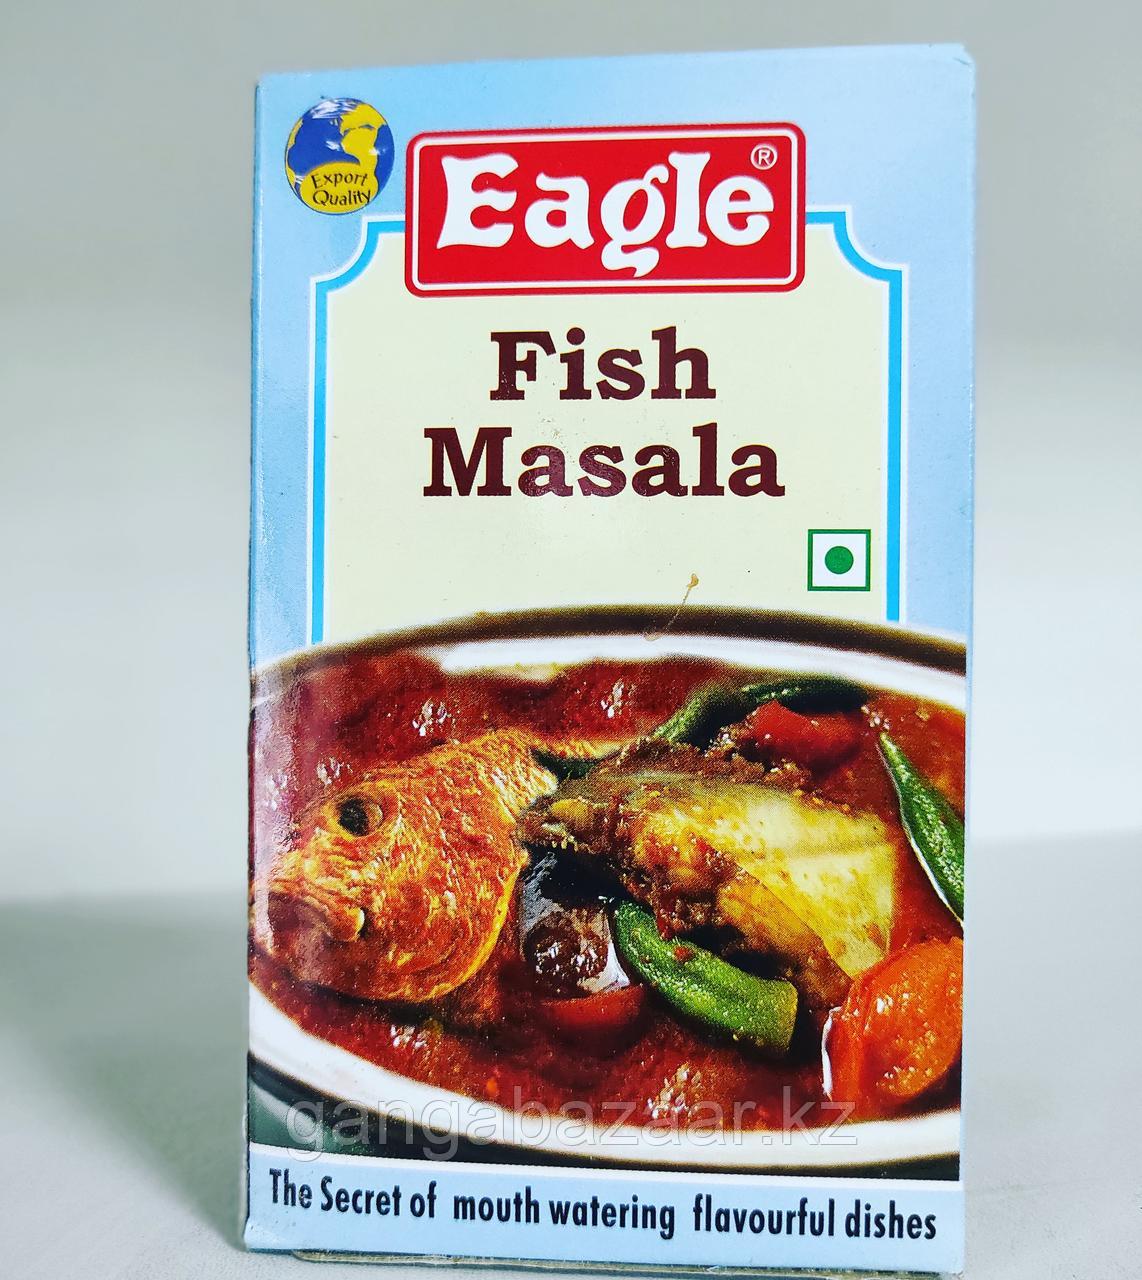 Фиш масала (Fish Masala, Eagle) - индийская смесь специй для рыбы, 100 гр